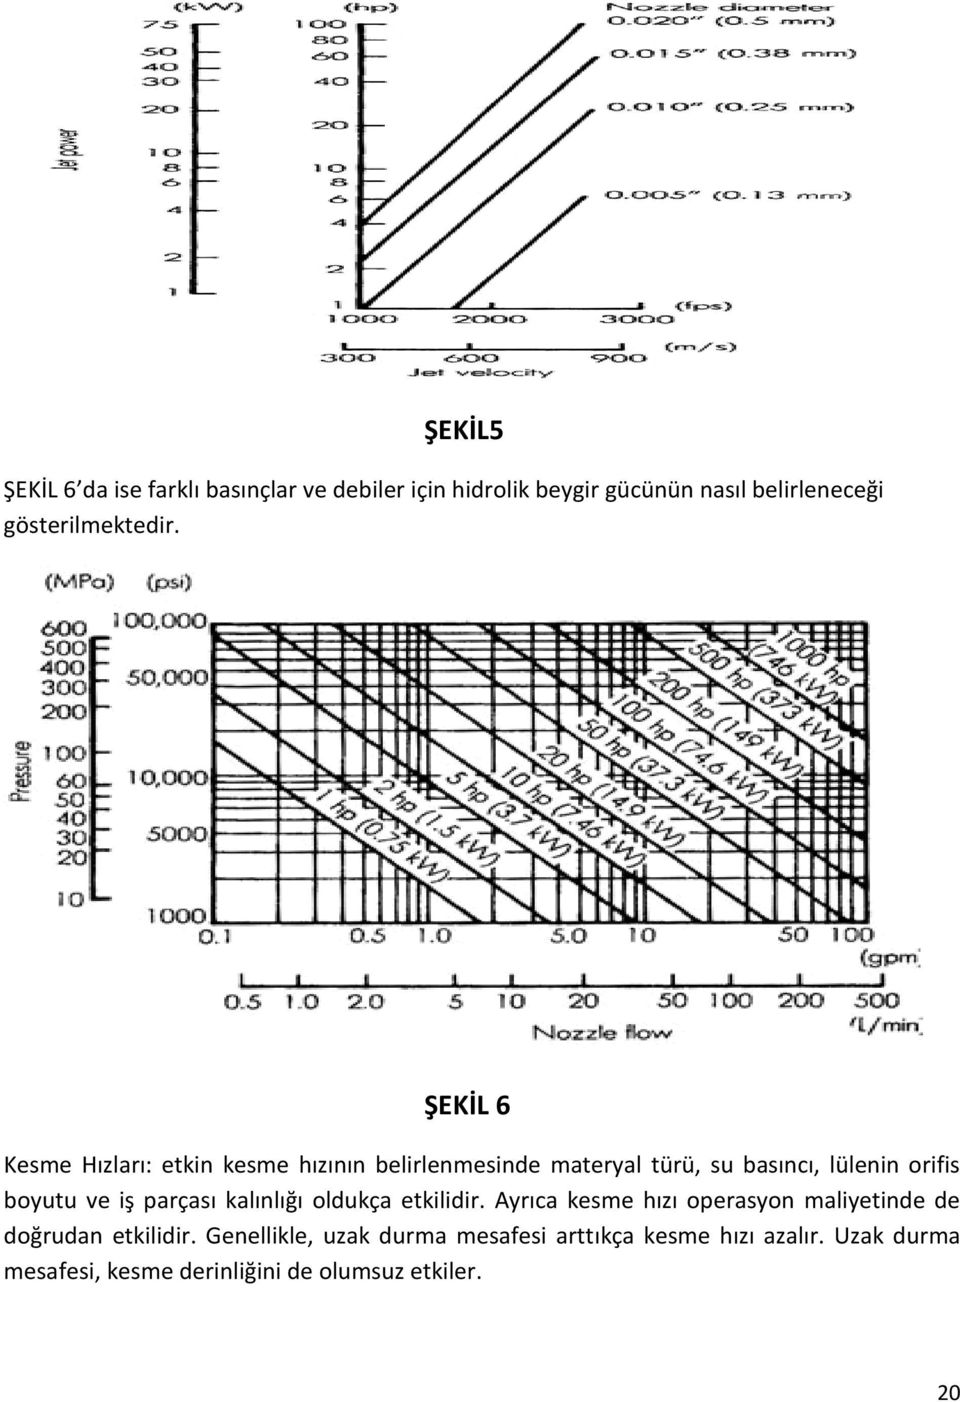 ŞEKİL 6 Kesme Hızları: etkin kesme hızının belirlenmesinde materyal türü, su basıncı, lülenin orifis boyutu ve